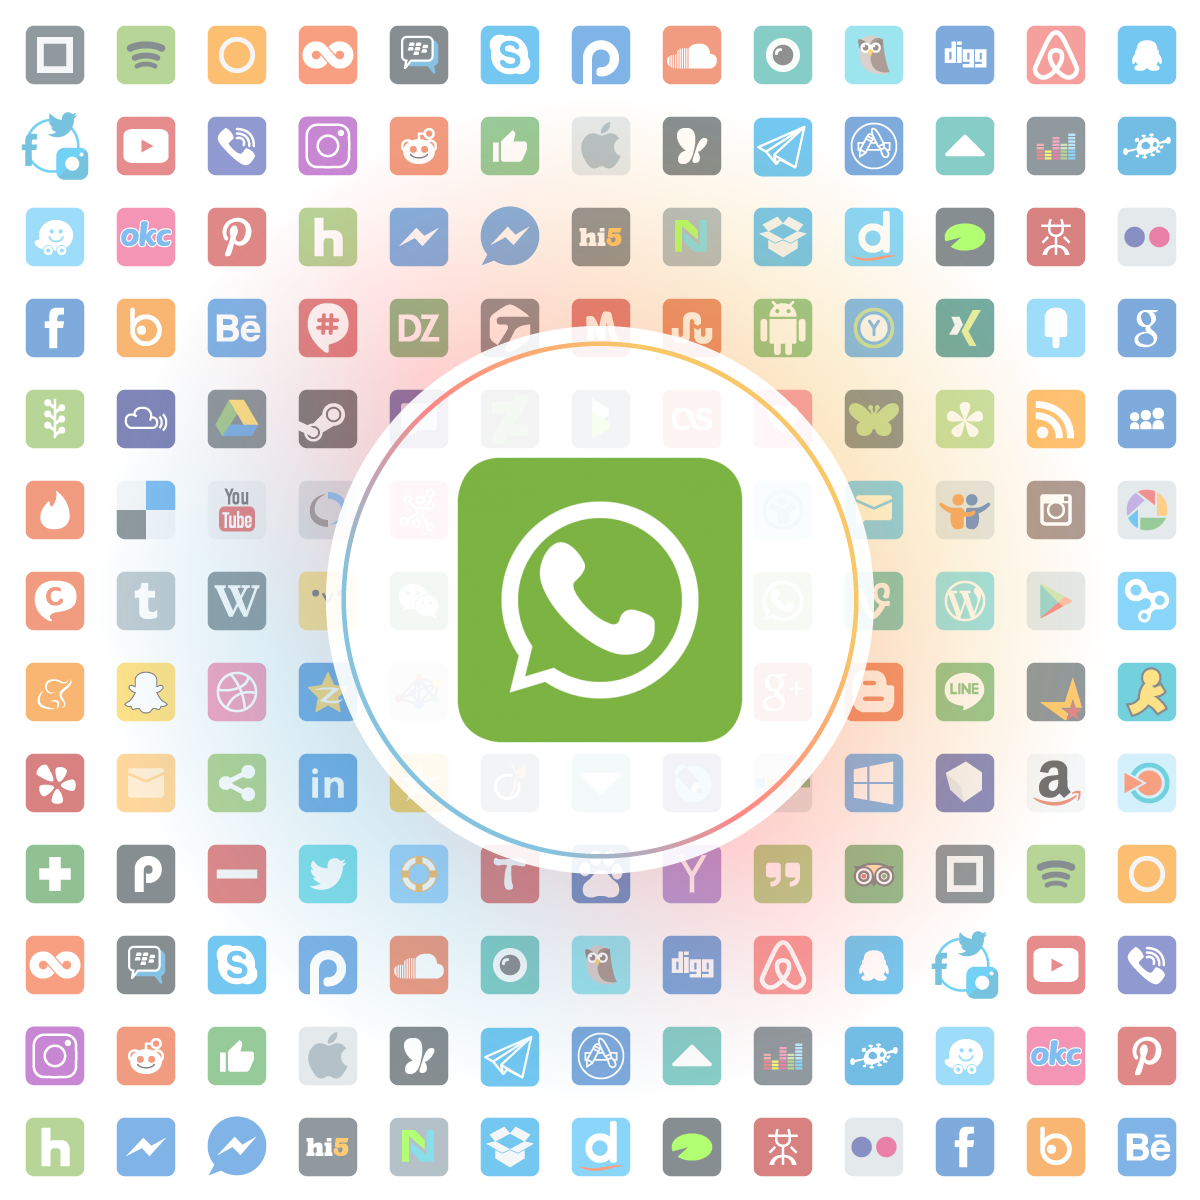 Whatsapp Icon Iconshock